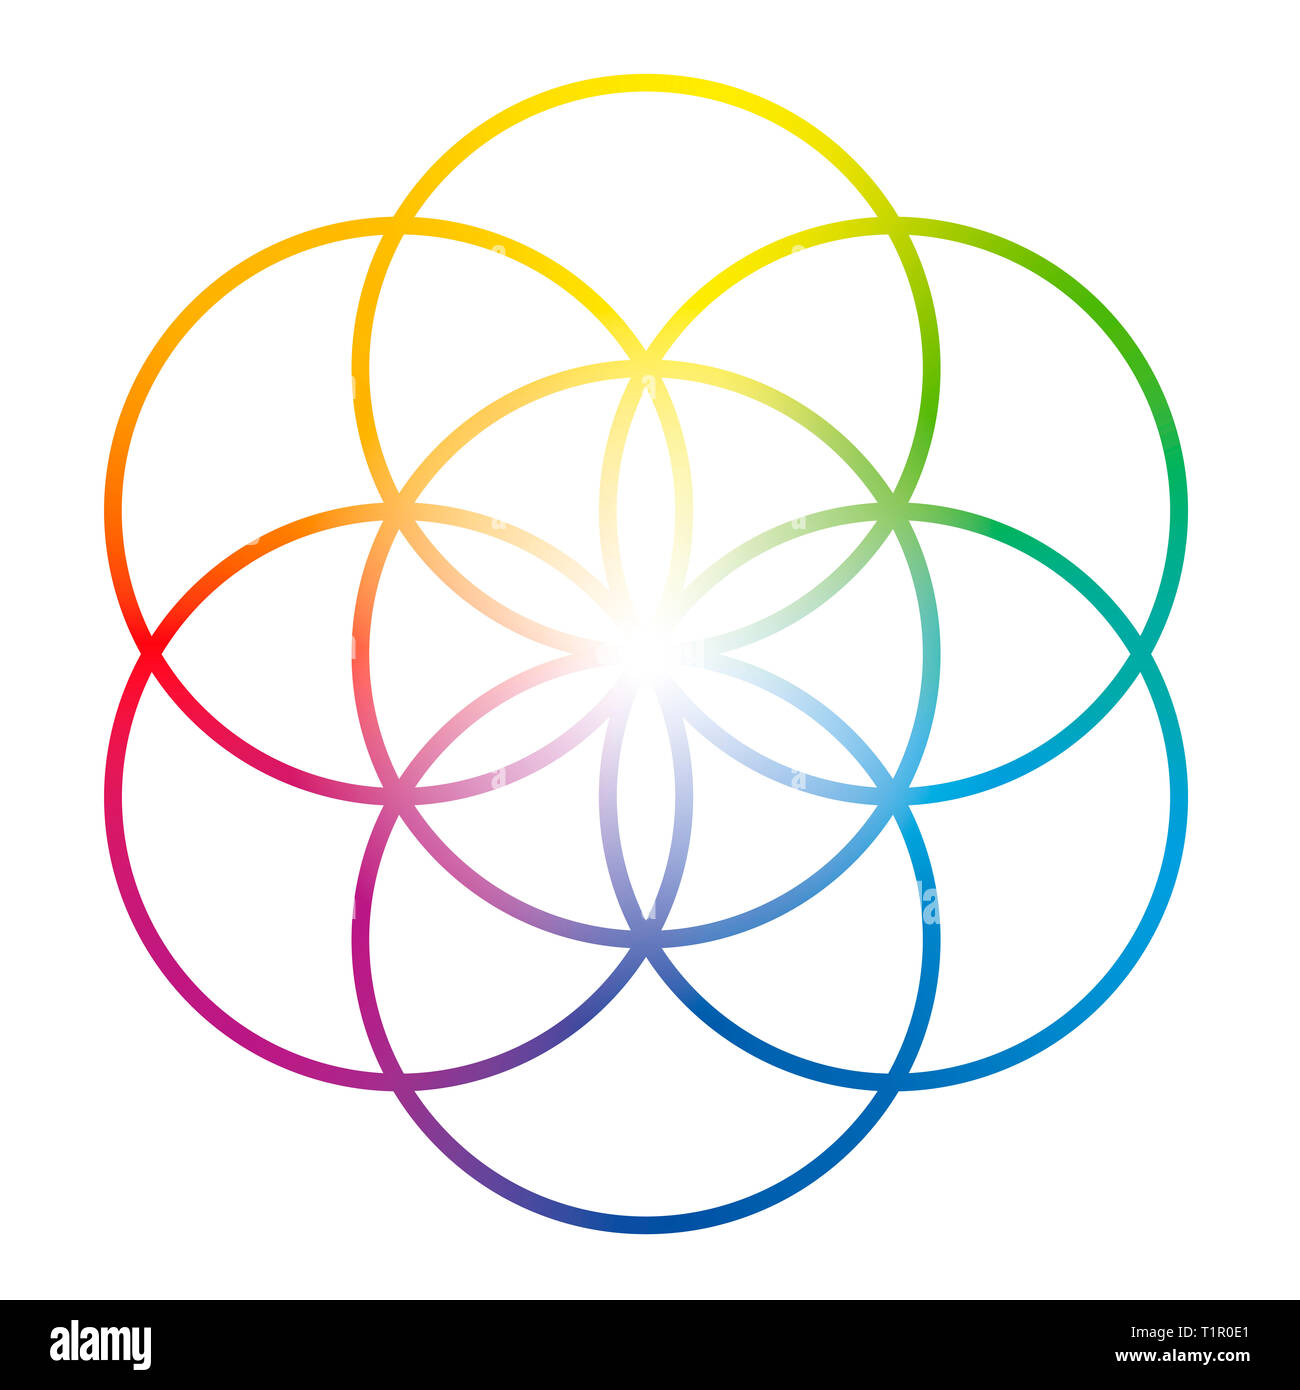 De couleur arc-en-semence de vie. Précurseur de Fleur de vie symbole. La figure géométrique unique, composée de sept cercles se chevauchant de même taille. Banque D'Images